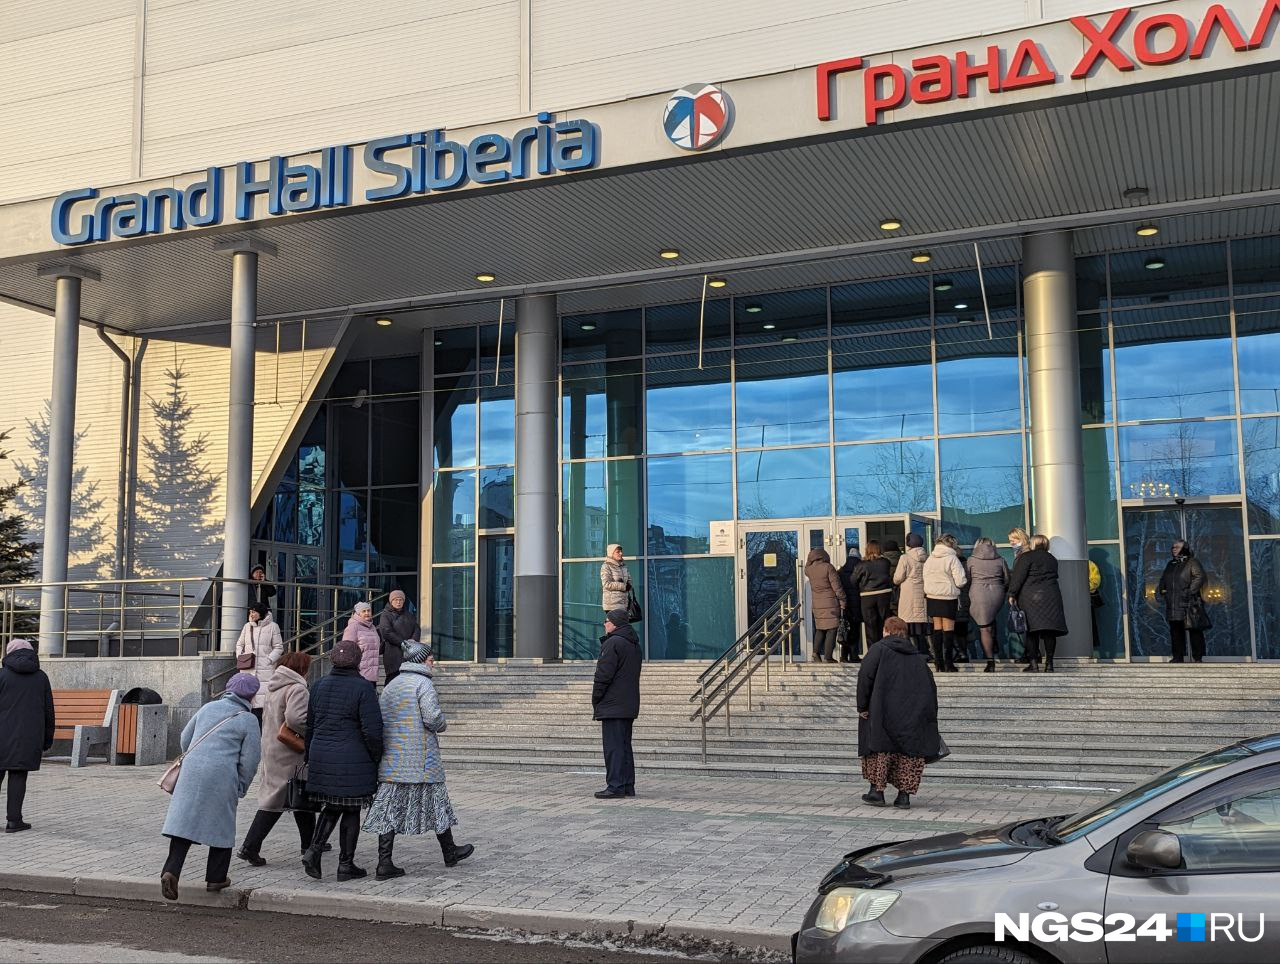 «Нас убедили, что всё безопасно»: какие меры безопасности приняли в «Гранд Холле Сибирь» после теракта в Подмосковье